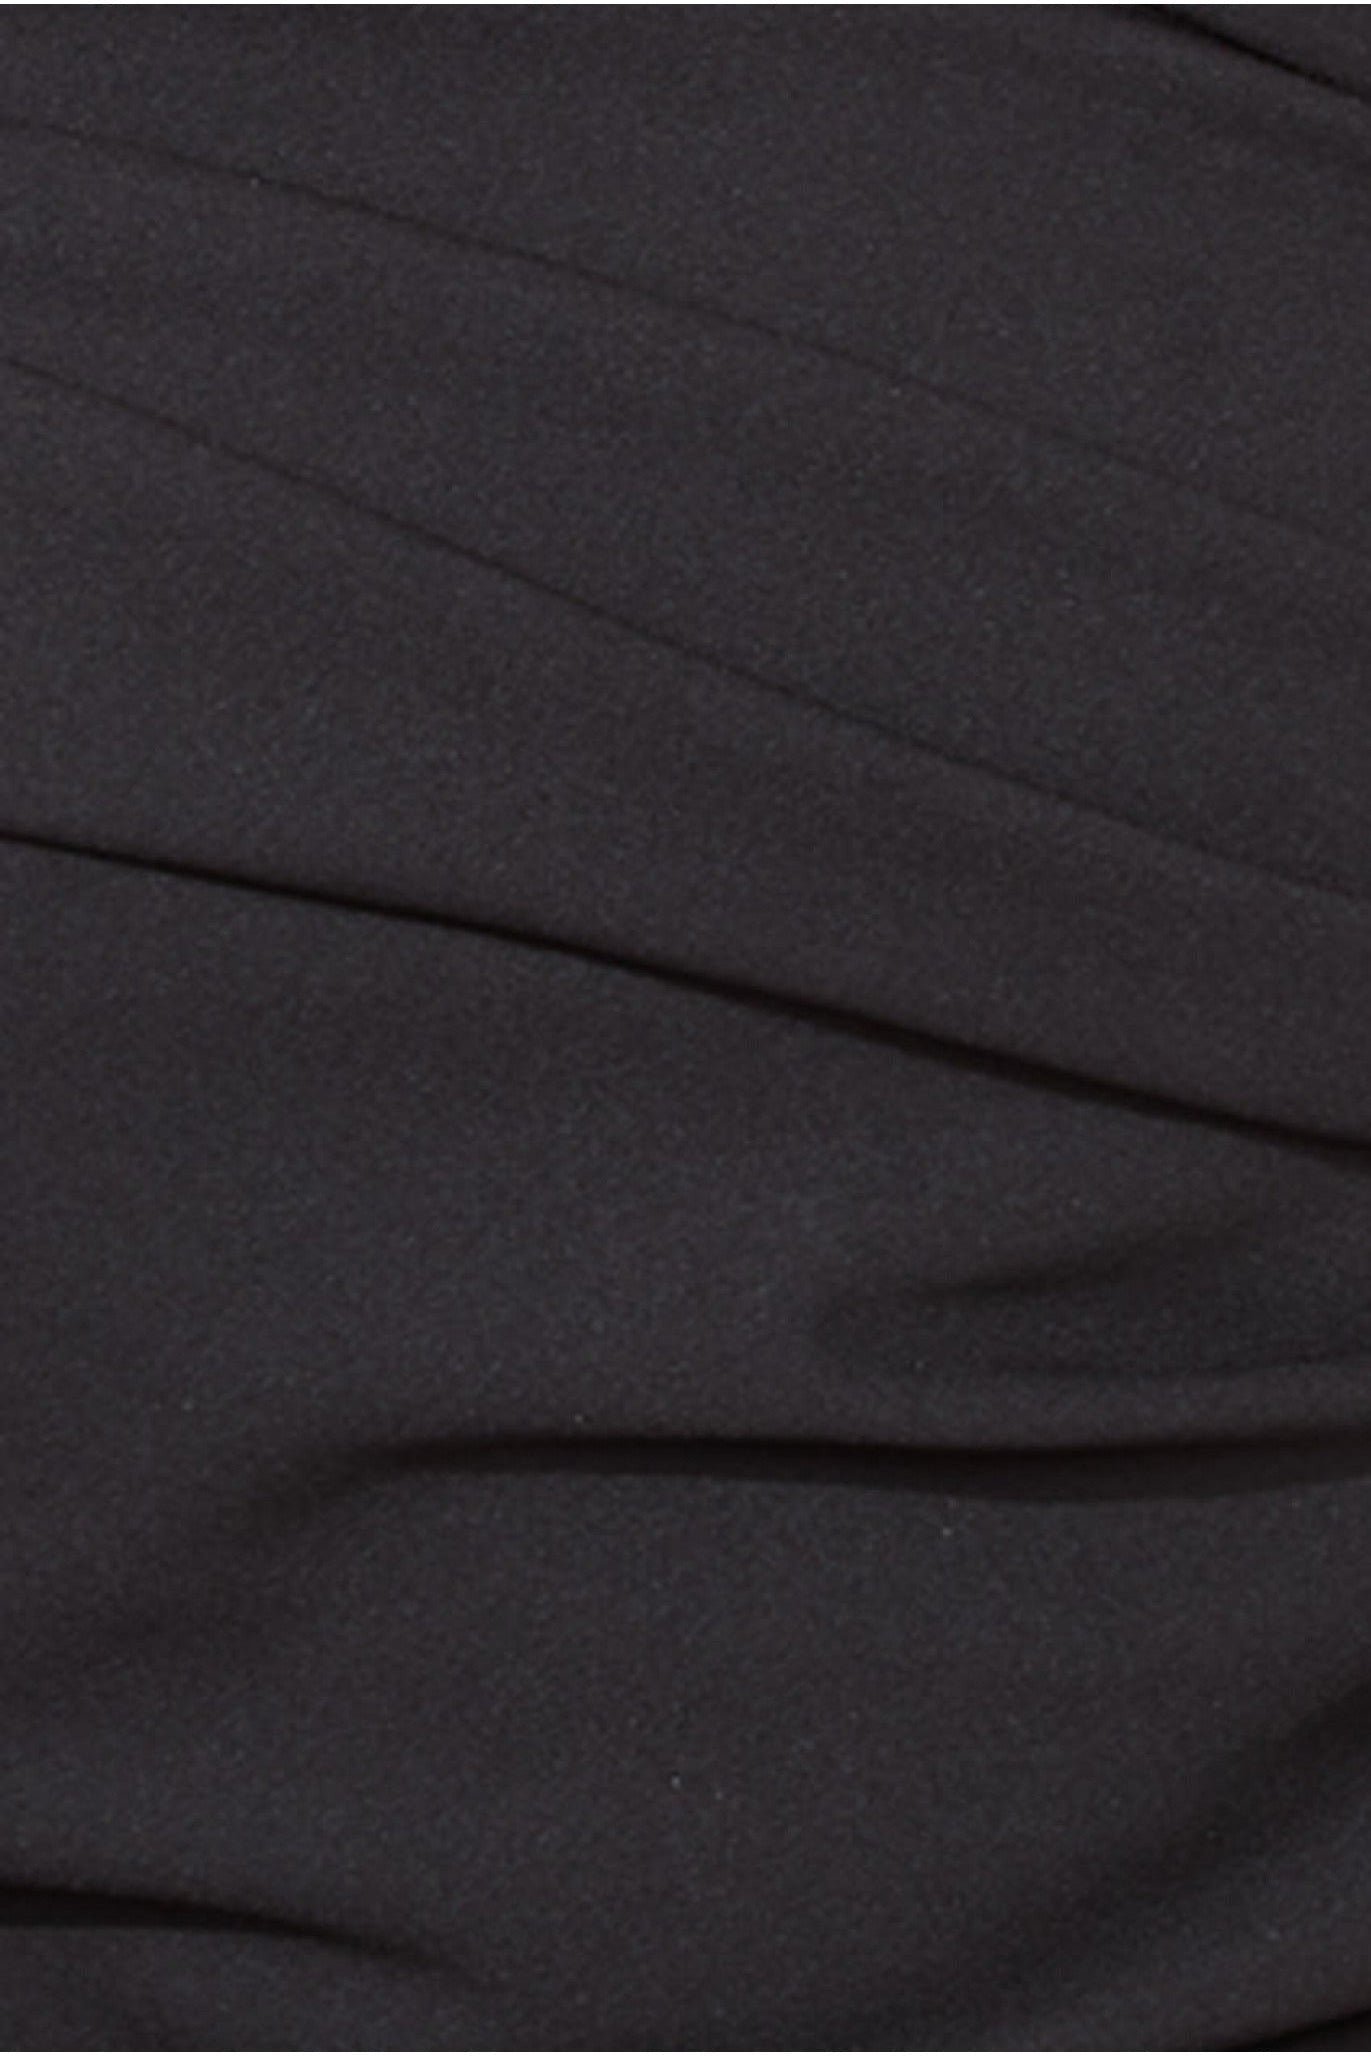 One Shoulder Evening Maxi Dress - Black DR3231